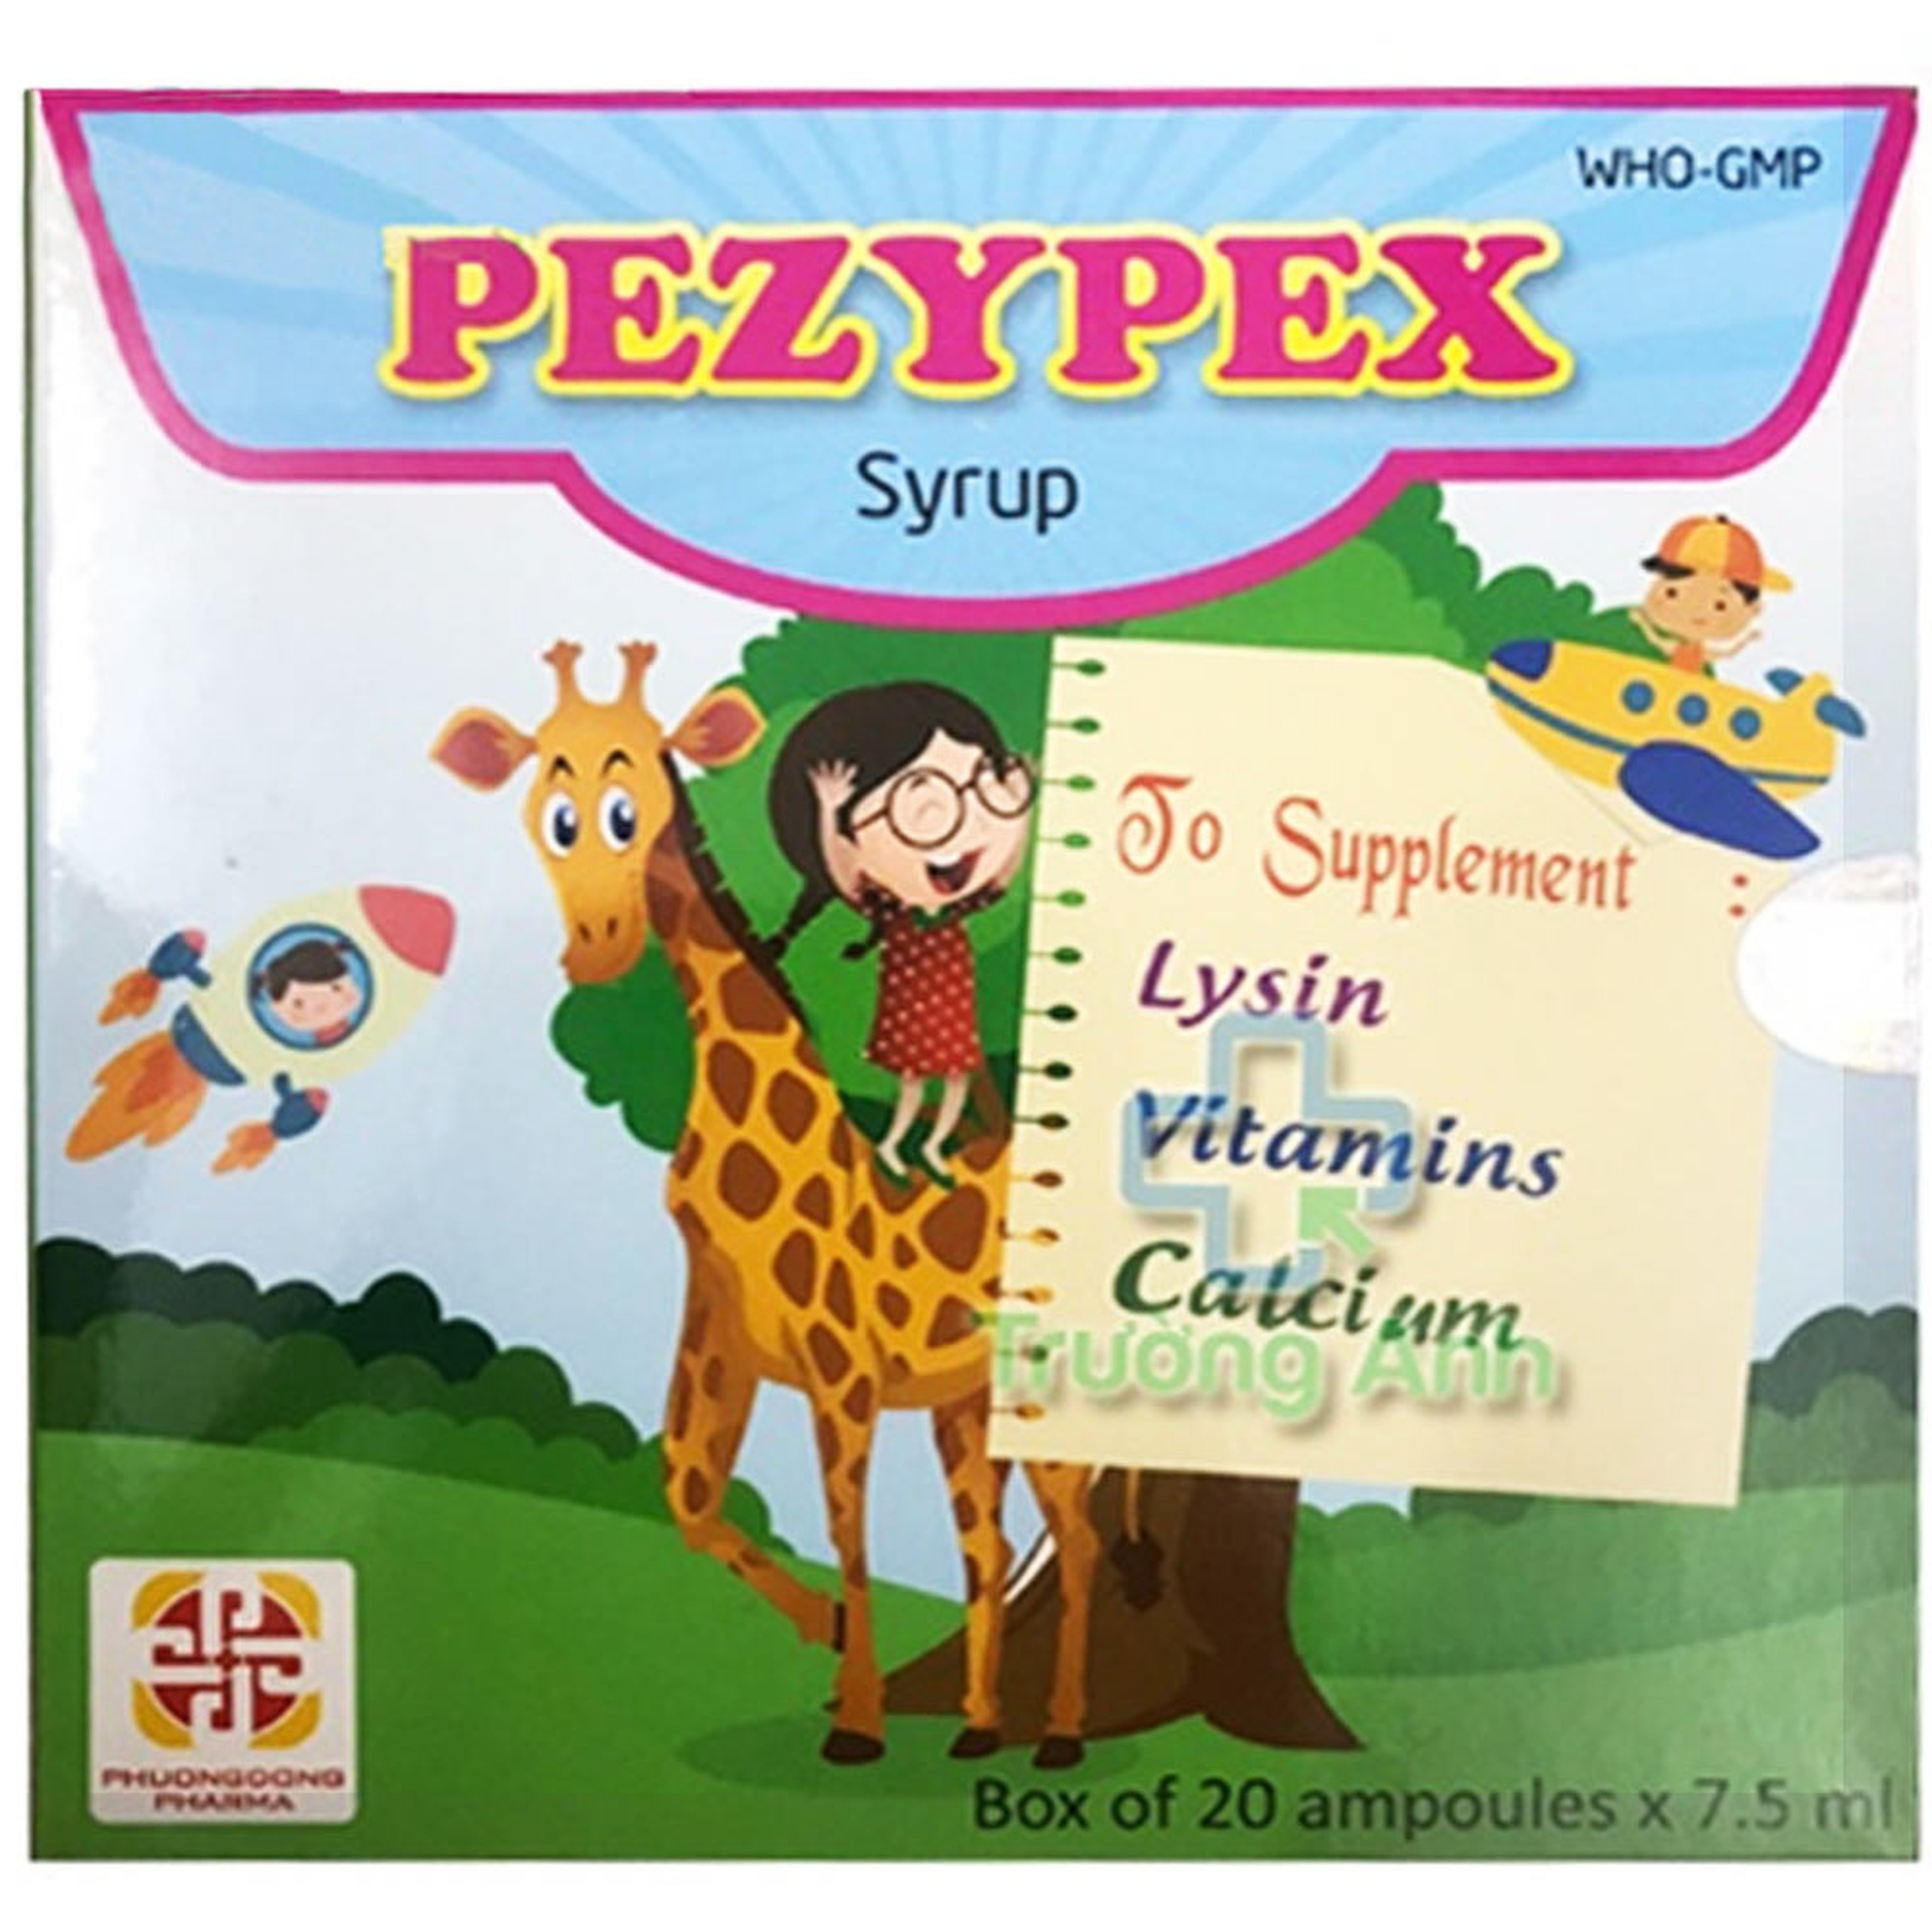 Siro Pezypex Phương Đông Pharma bổ sung lysin, vitamin và khoáng chất giúp bé ăn ngon (20 ống x 7.5ml)